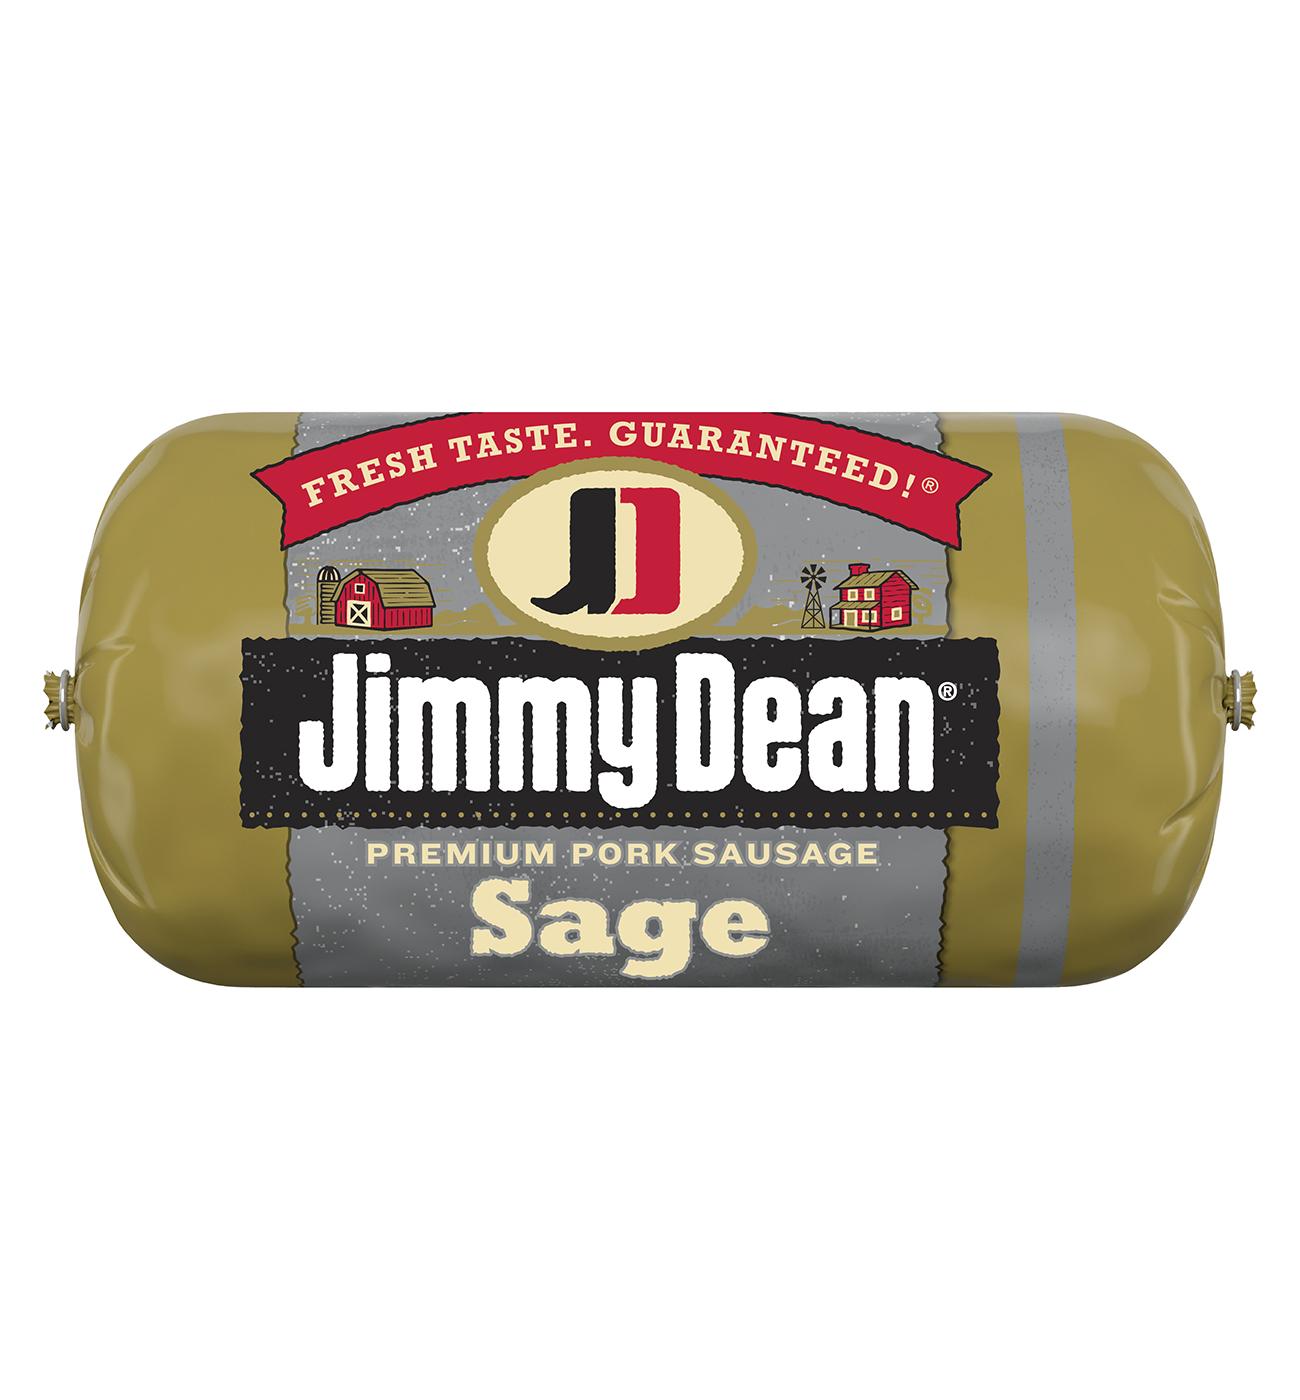 Jimmy Dean Premium Pork Breakfast Sausage - Sage; image 1 of 5